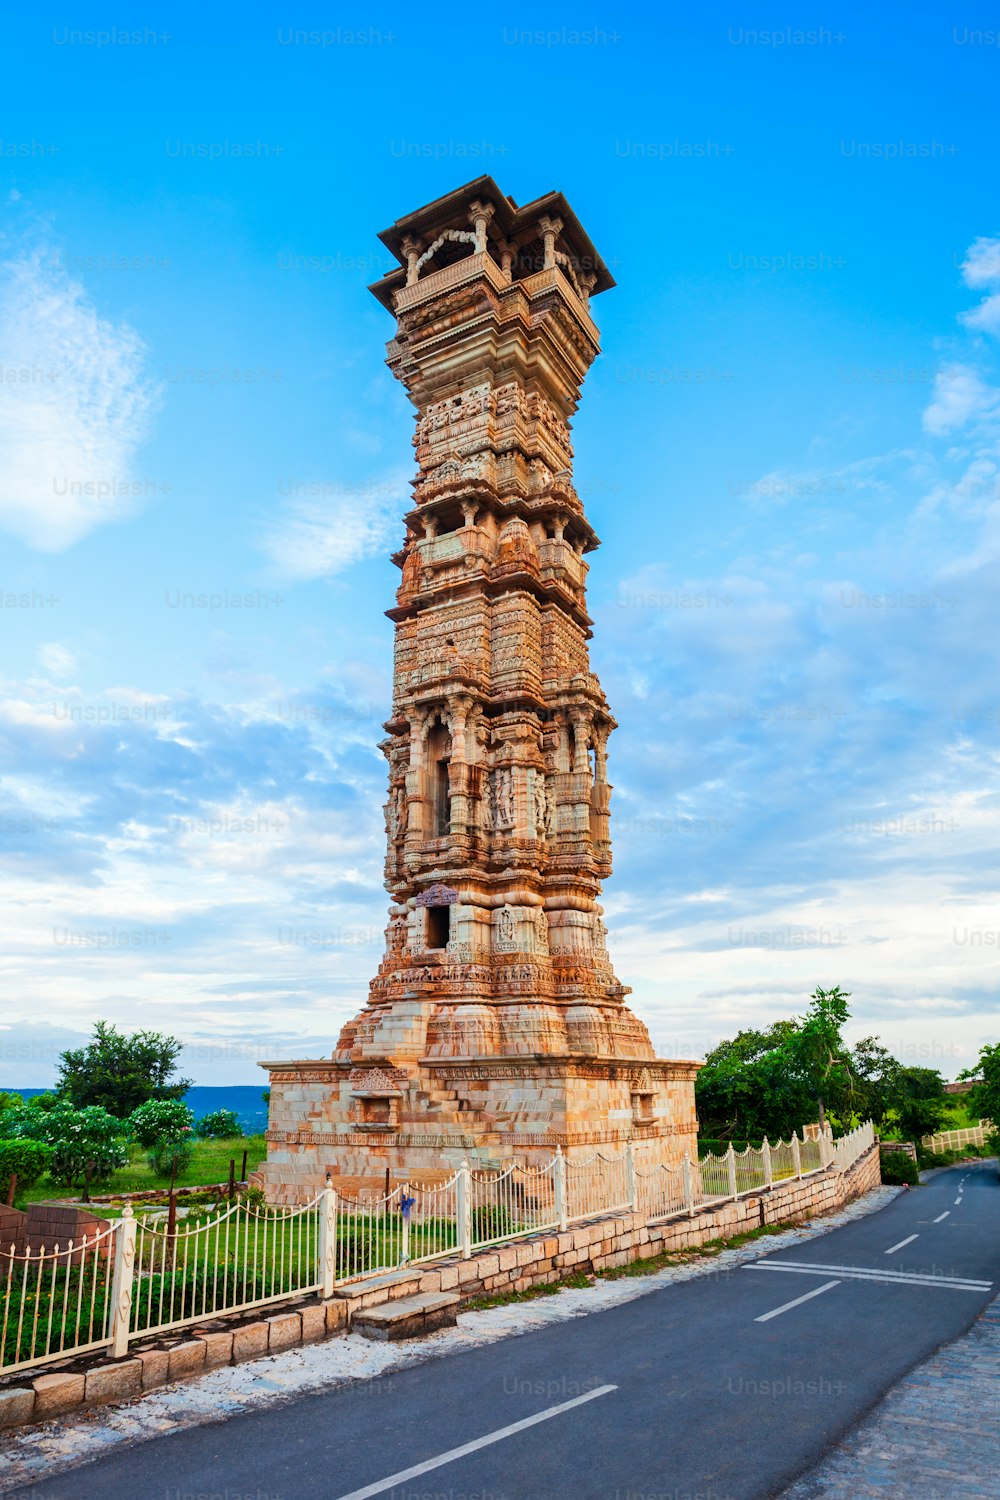 Kirti Stambh bedeutet Turm des Ruhms ist ein Monument-Turm im Chittor Fort in der Stadt Chittorgarh im indischen Bundesstaat Rajasthan